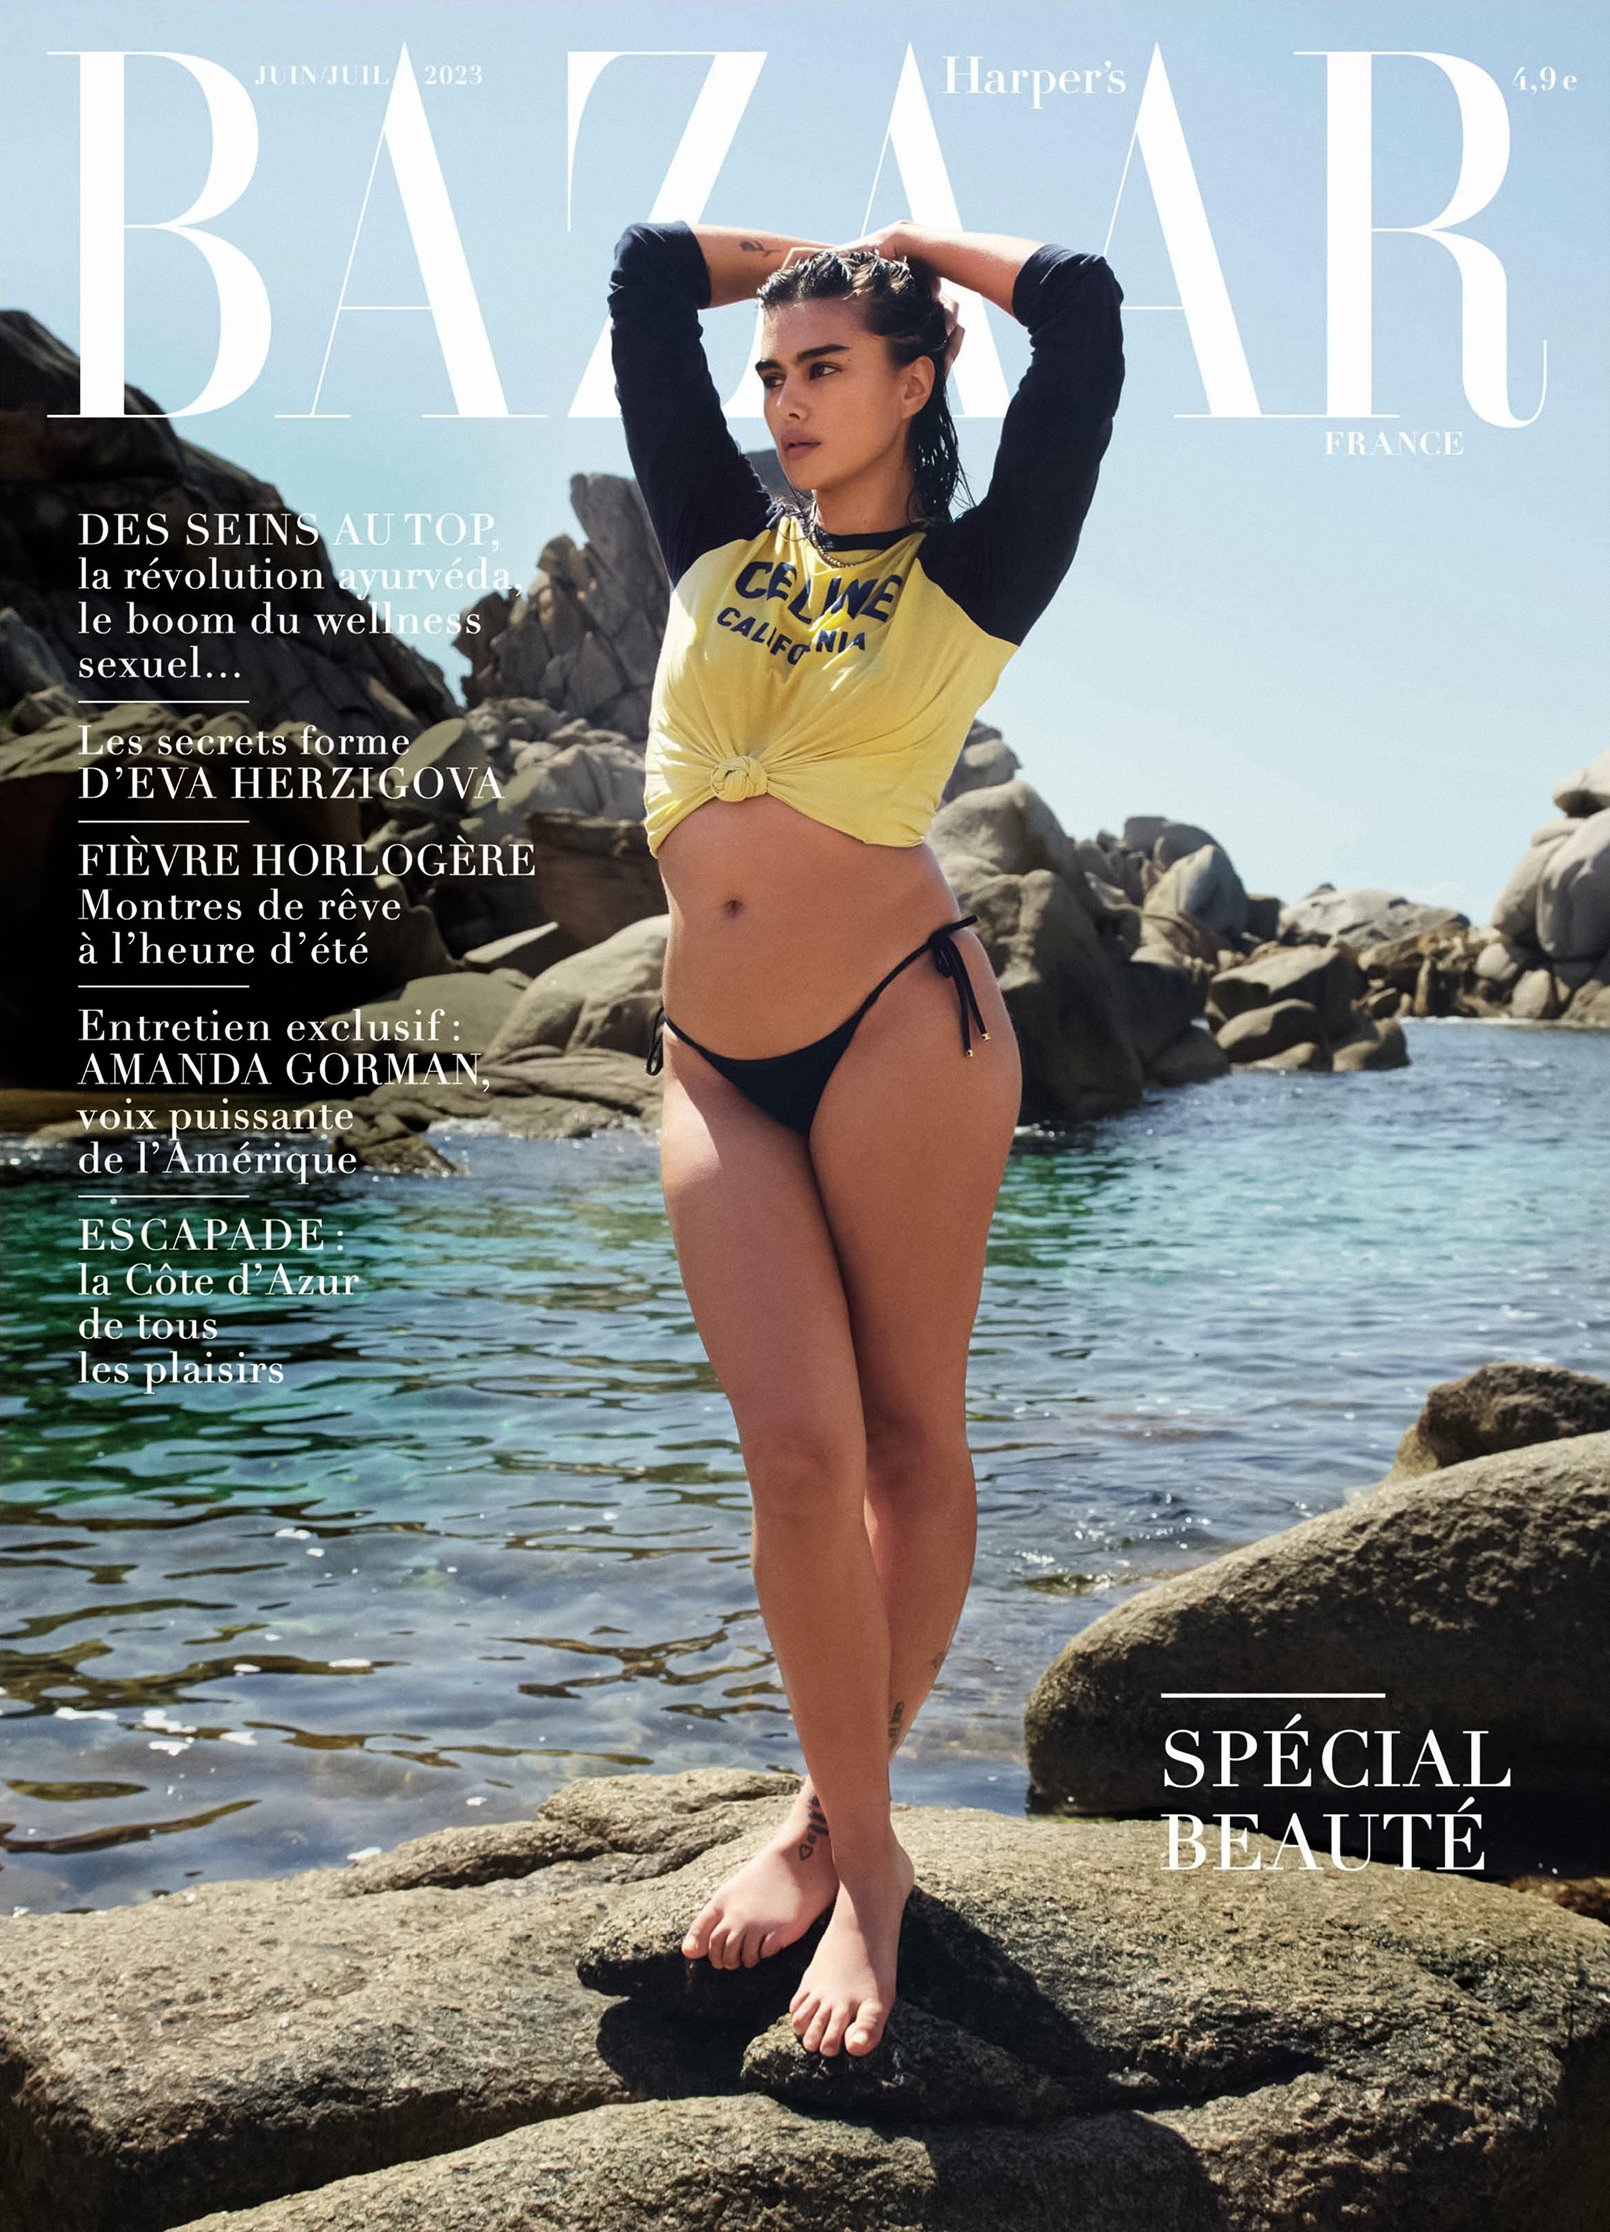 Harpers-Bazaar-June-July-2023-Covers-by-Mario-Sorrenti00003.jpeg